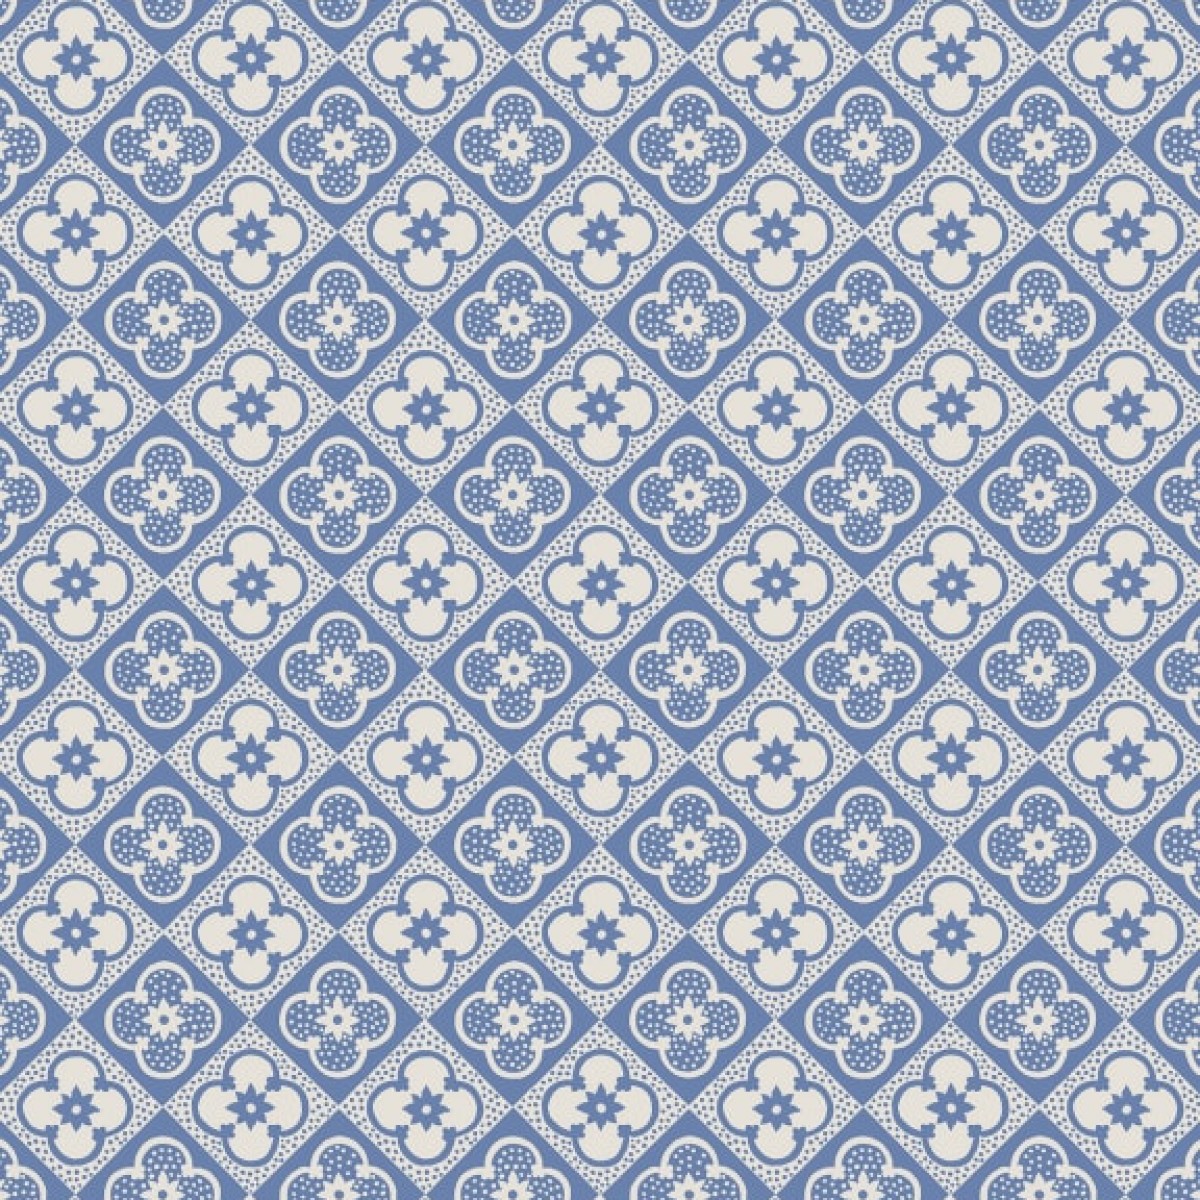 Tapet Sandberg SND-S10150. Conține culorile: Albastru, Albastru Porumbel, Alb, Alb Pur, Gri, Telegri 4, Gri, Gri Piatră